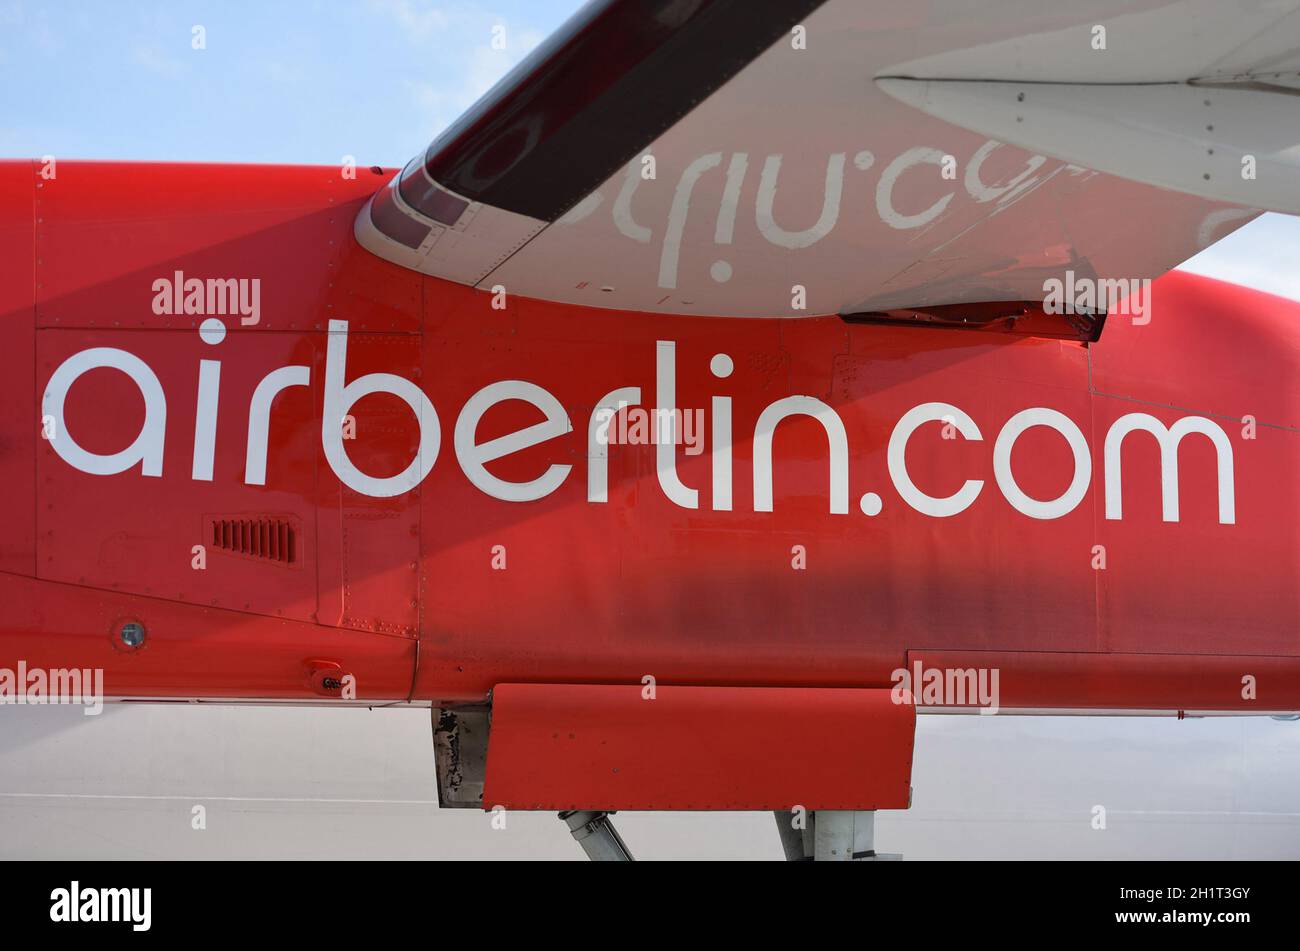 Flugzeug der ehemaligen Airberlin, Deutschland, Europa - Airplane of the former Airberlin, Germany, Europe Stock Photo